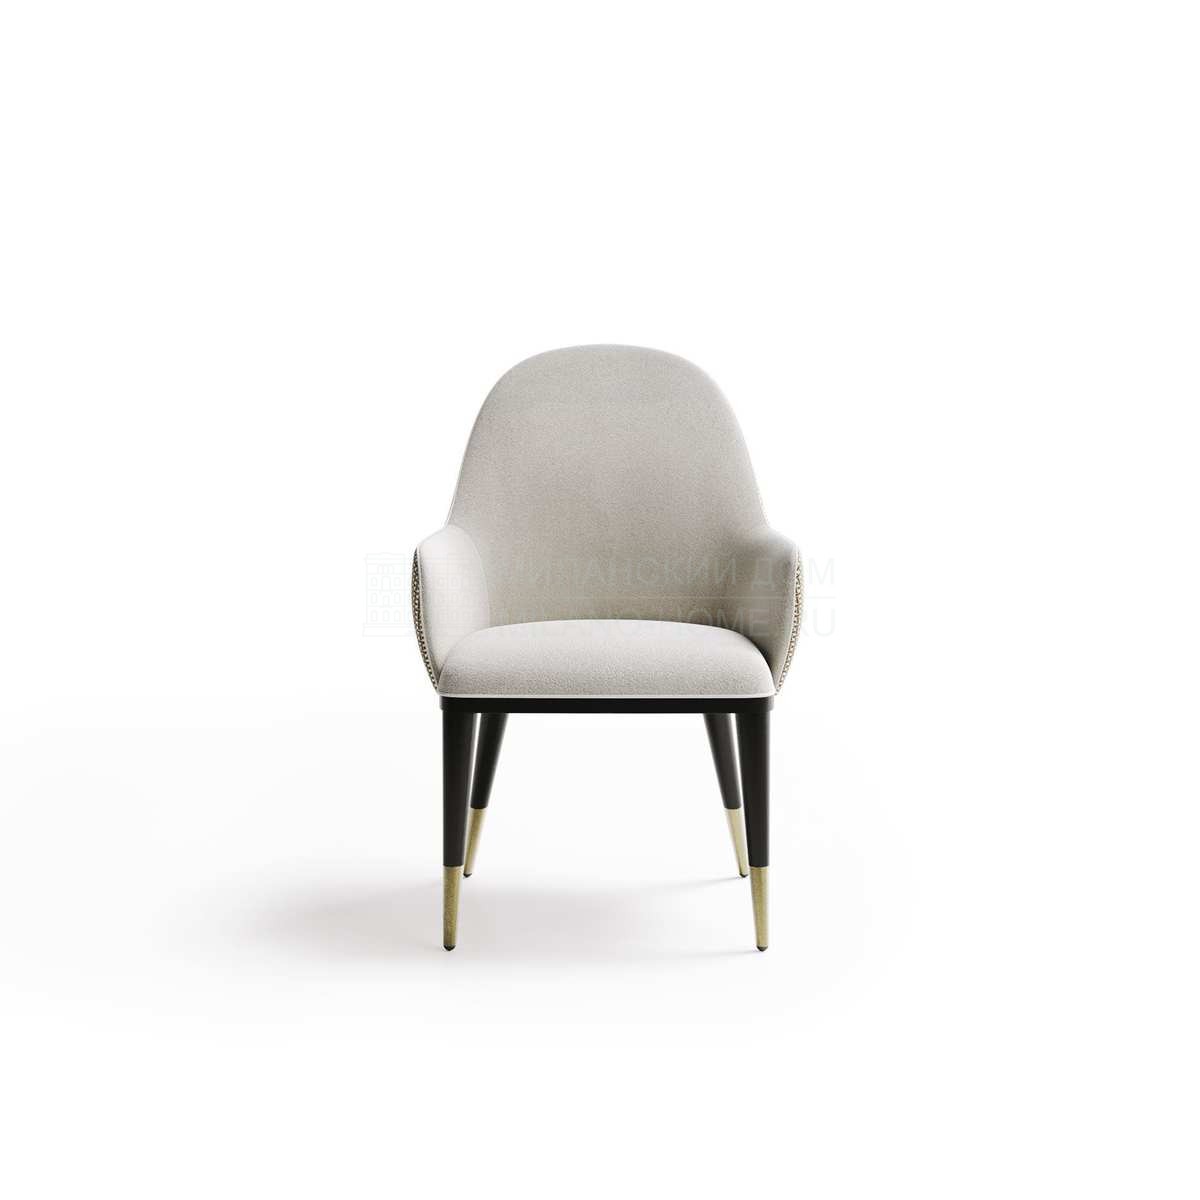 Полукресло Adele chair из Италии фабрики CAPITAL Collection